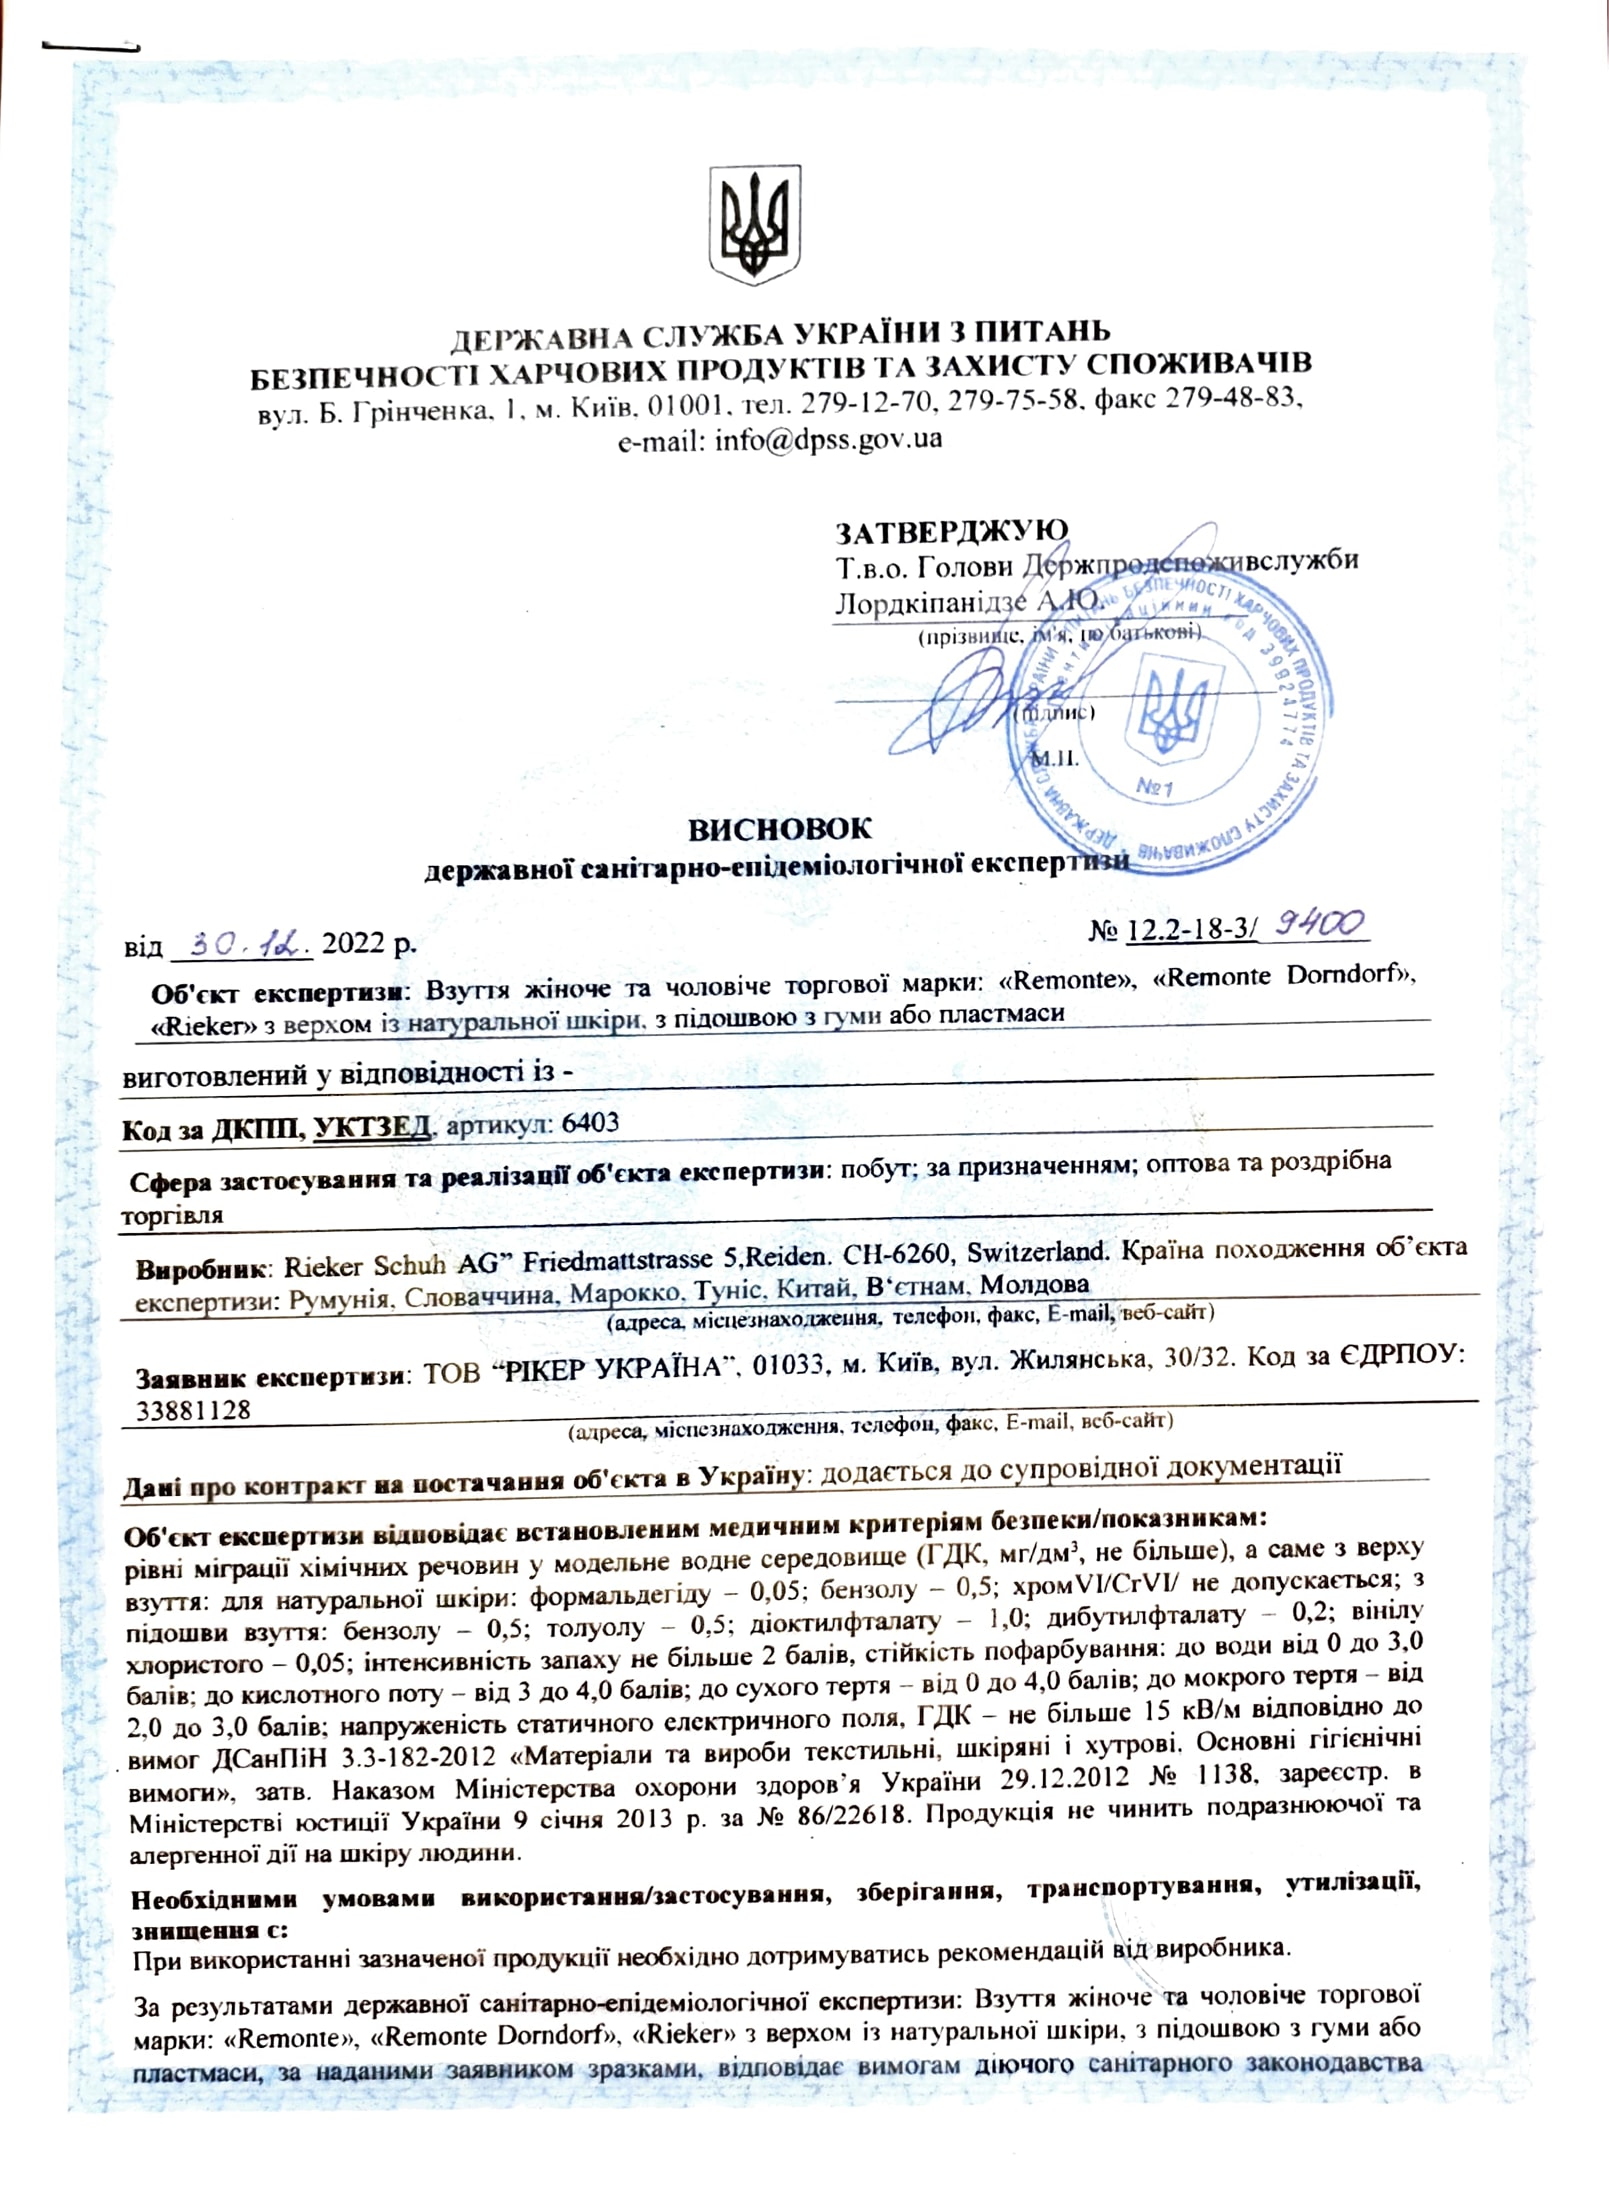 Сертифікат на продукцію Rieker/Remonte 2022 р.